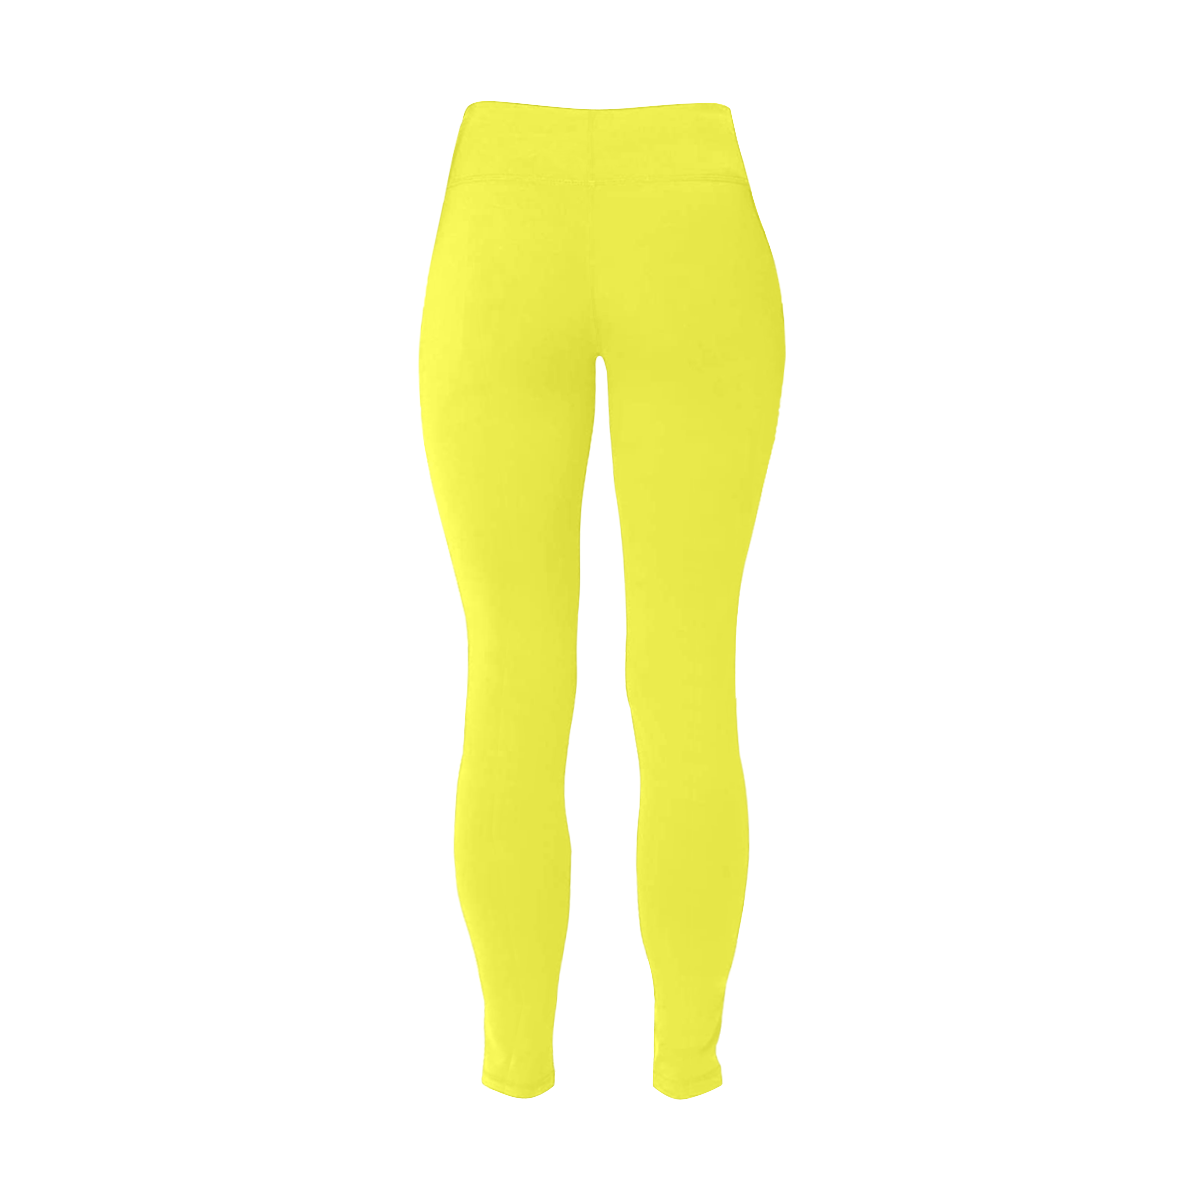 color maximum yellow Women's Plus Size High Waist Leggings (Model L44)